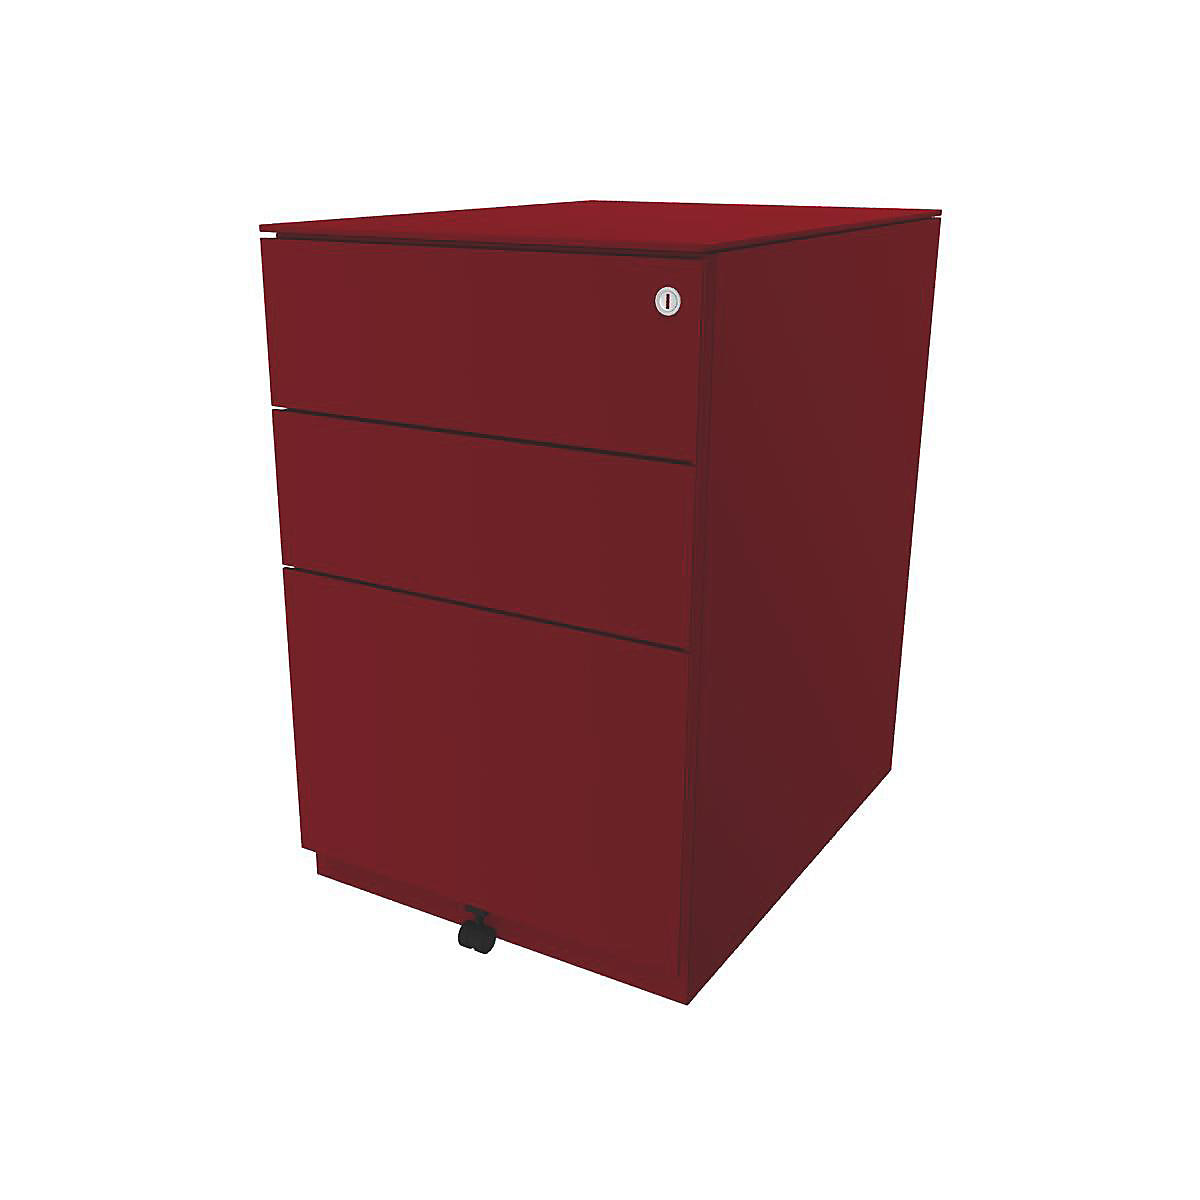 Pojazdný kontajner Note™, s 2 univerzálnymi zásuvkami, 1 závesná registratúra – BISLEY, v x š x h 652 x 420 x 565 mm, s hornou doskou, kardinálska červená-3